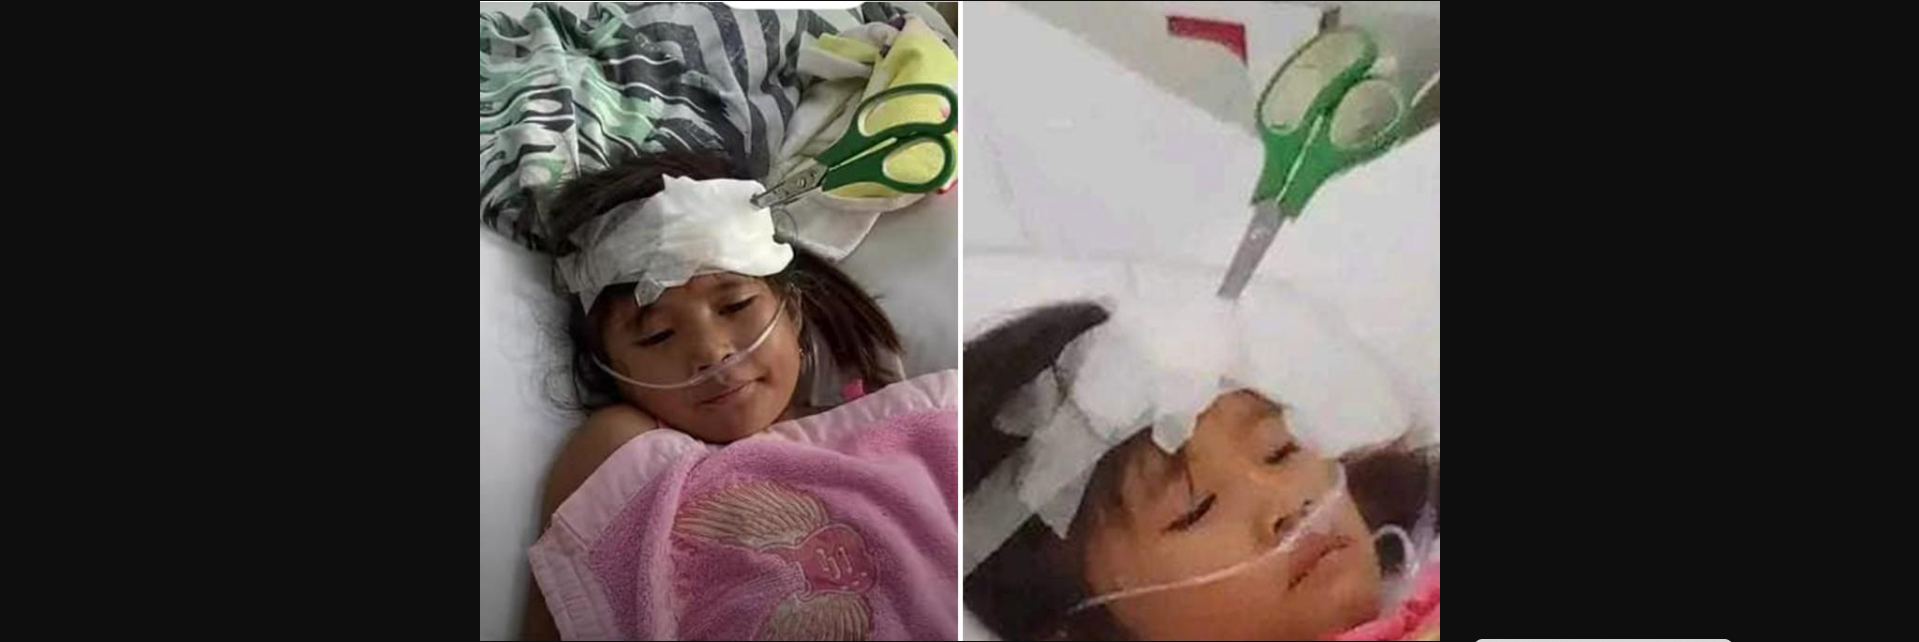 Φιλιππίνες: Απίστευτο θέαμα – 9χρονο κορίτσι διακομίσθηκε στο νοσοκομείο με ψαλίδι καρφωμένο στο κεφάλι της